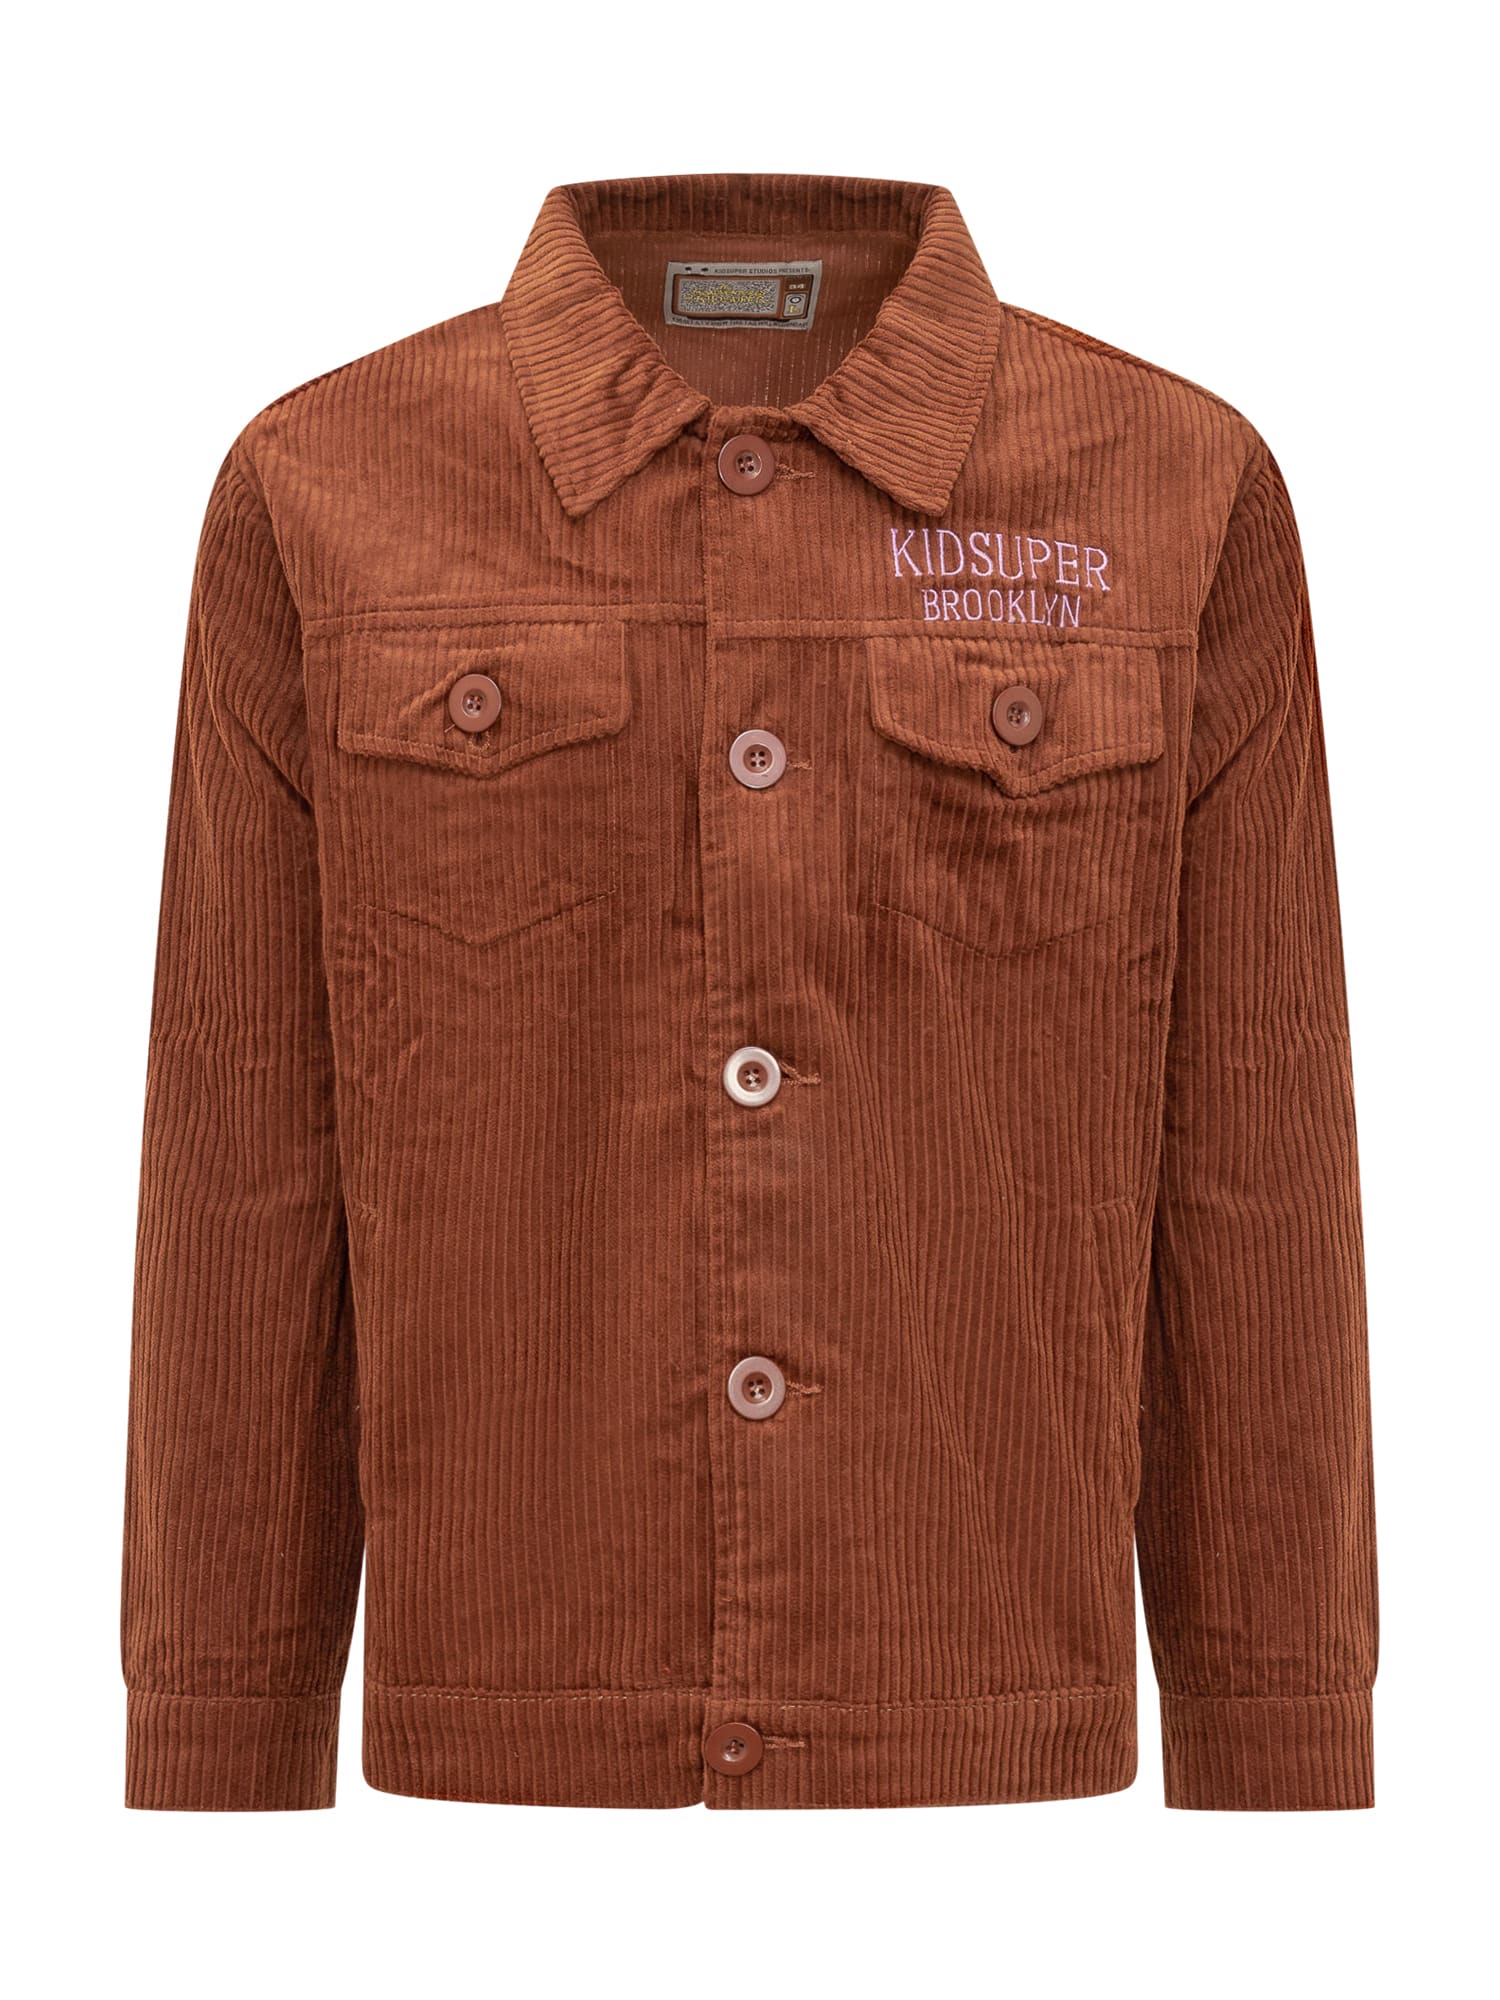 Brown Cord Jacket